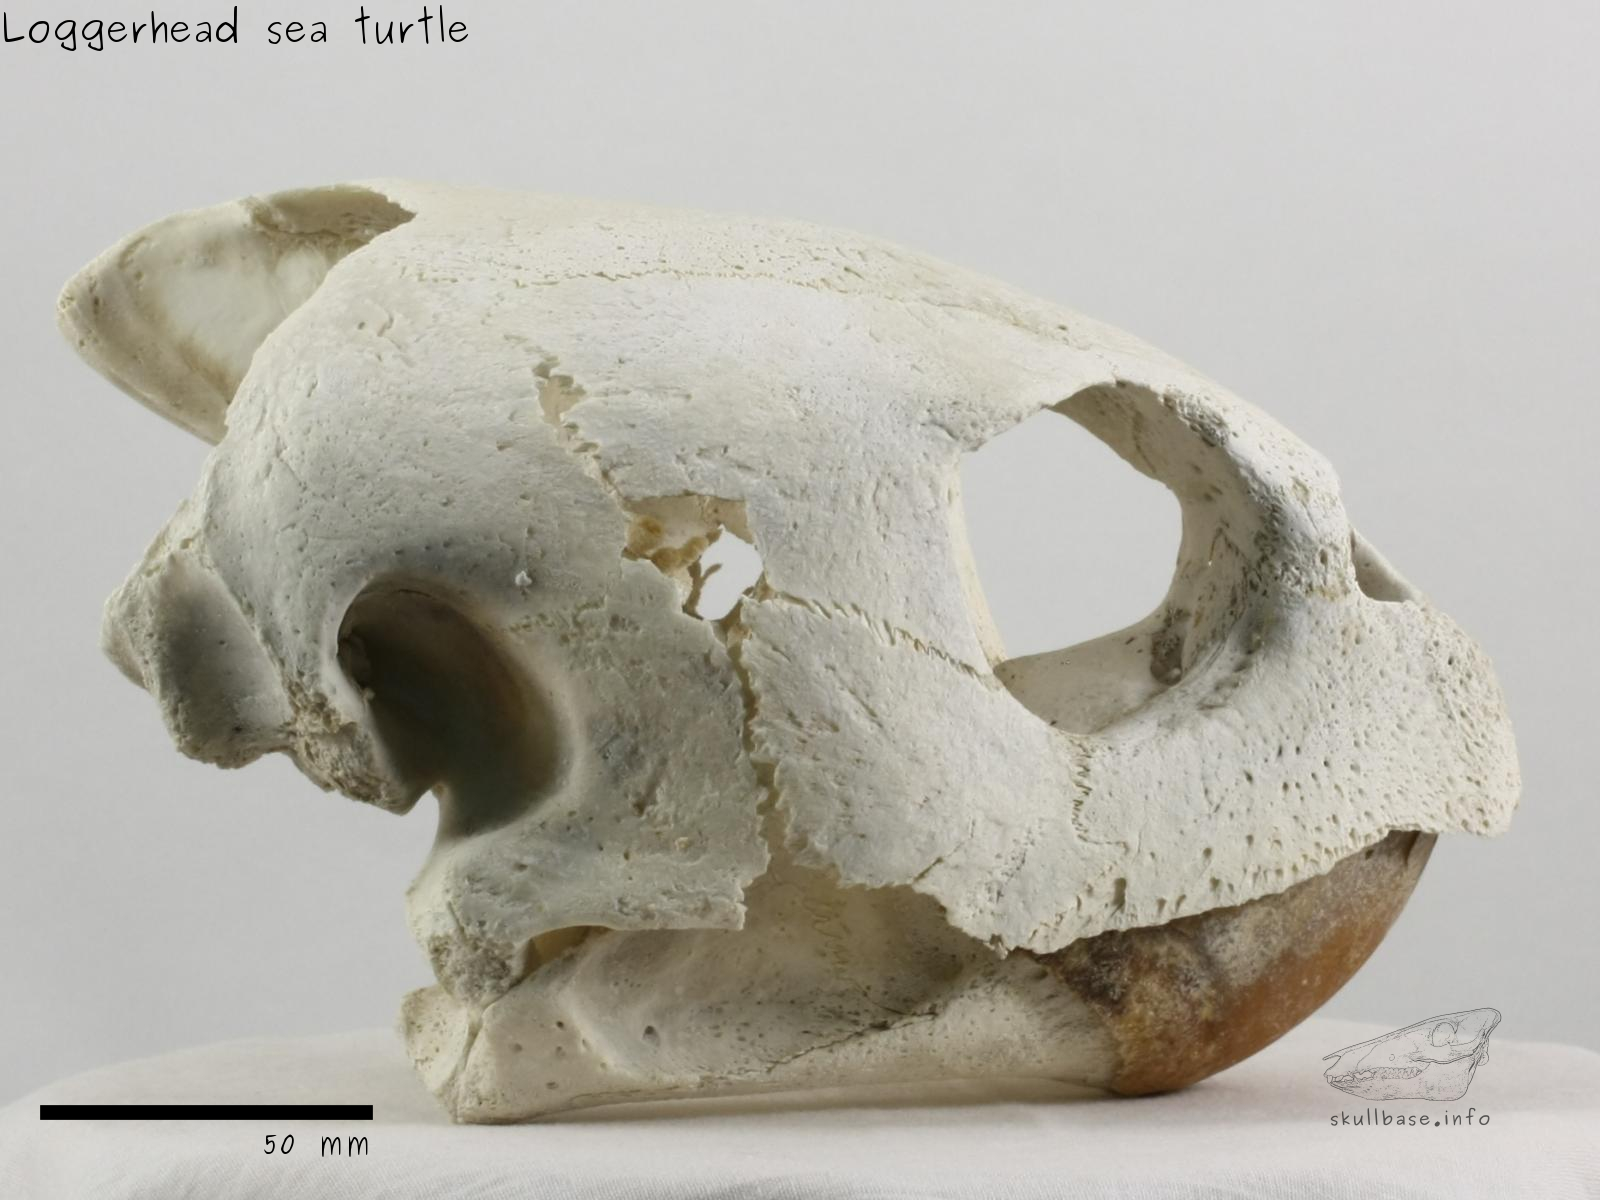 Loggerhead sea turtle (Caretta caretta) skull lateral view